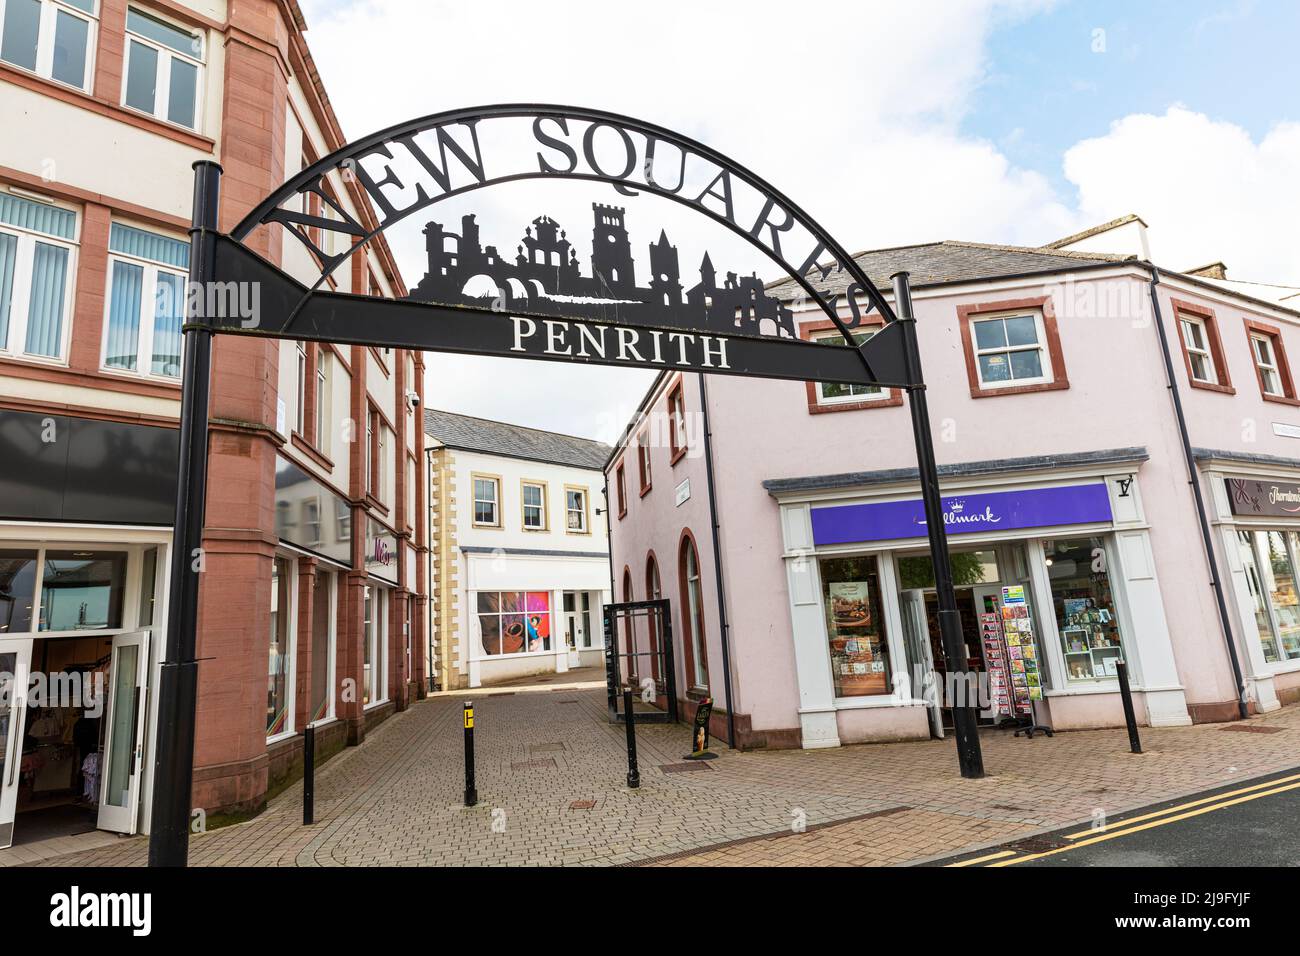 Penrith Town, Cumbria, Reino Unido, Inglaterra, New Squares Penrith, centro comercial, Penrith Cumbria, Penrith UK, centro de Penrith, nuevas plazas, ciudad, ciudades, tiendas, Foto de stock